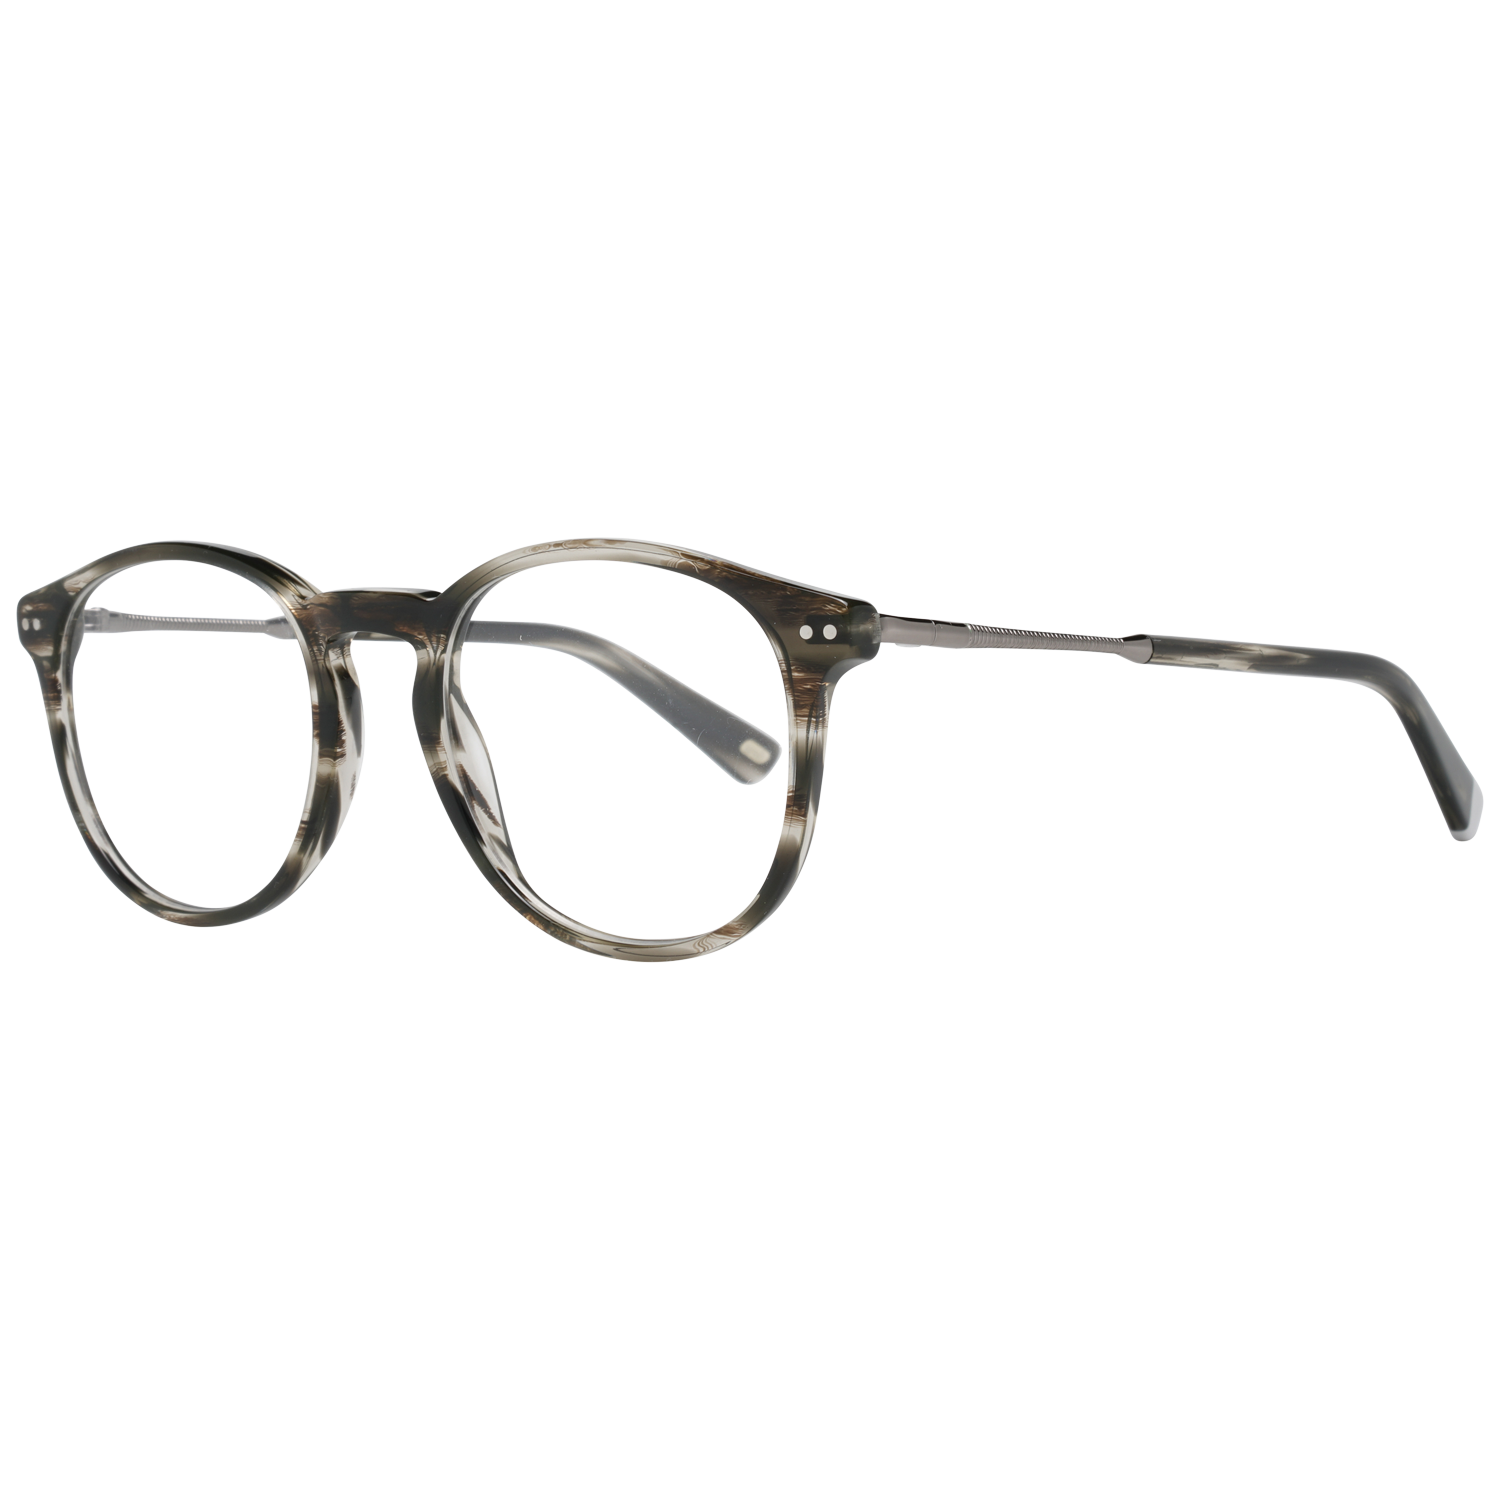 Web Frames Web Glasses Optical Frame WE5221 020 50 Eyeglasses Eyewear UK USA Australia 